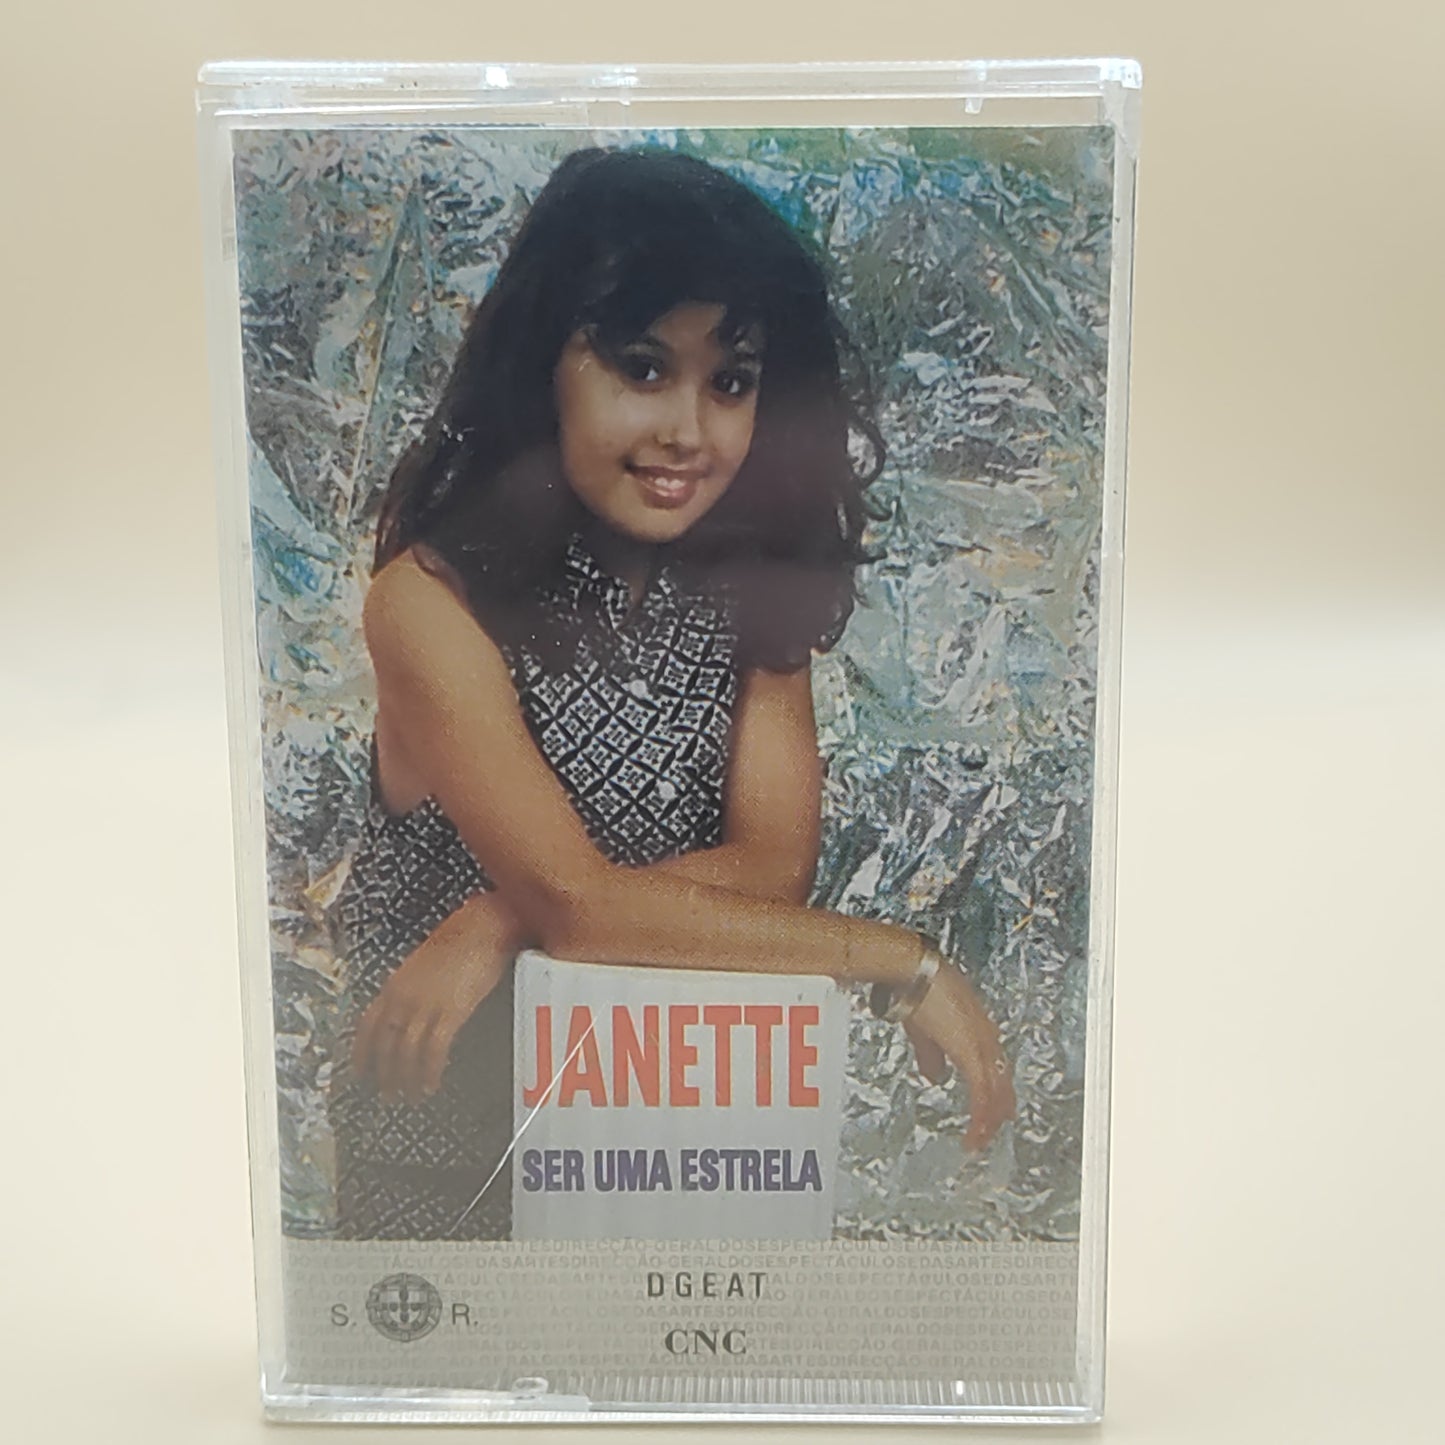 JANETTE - Ser um estrela